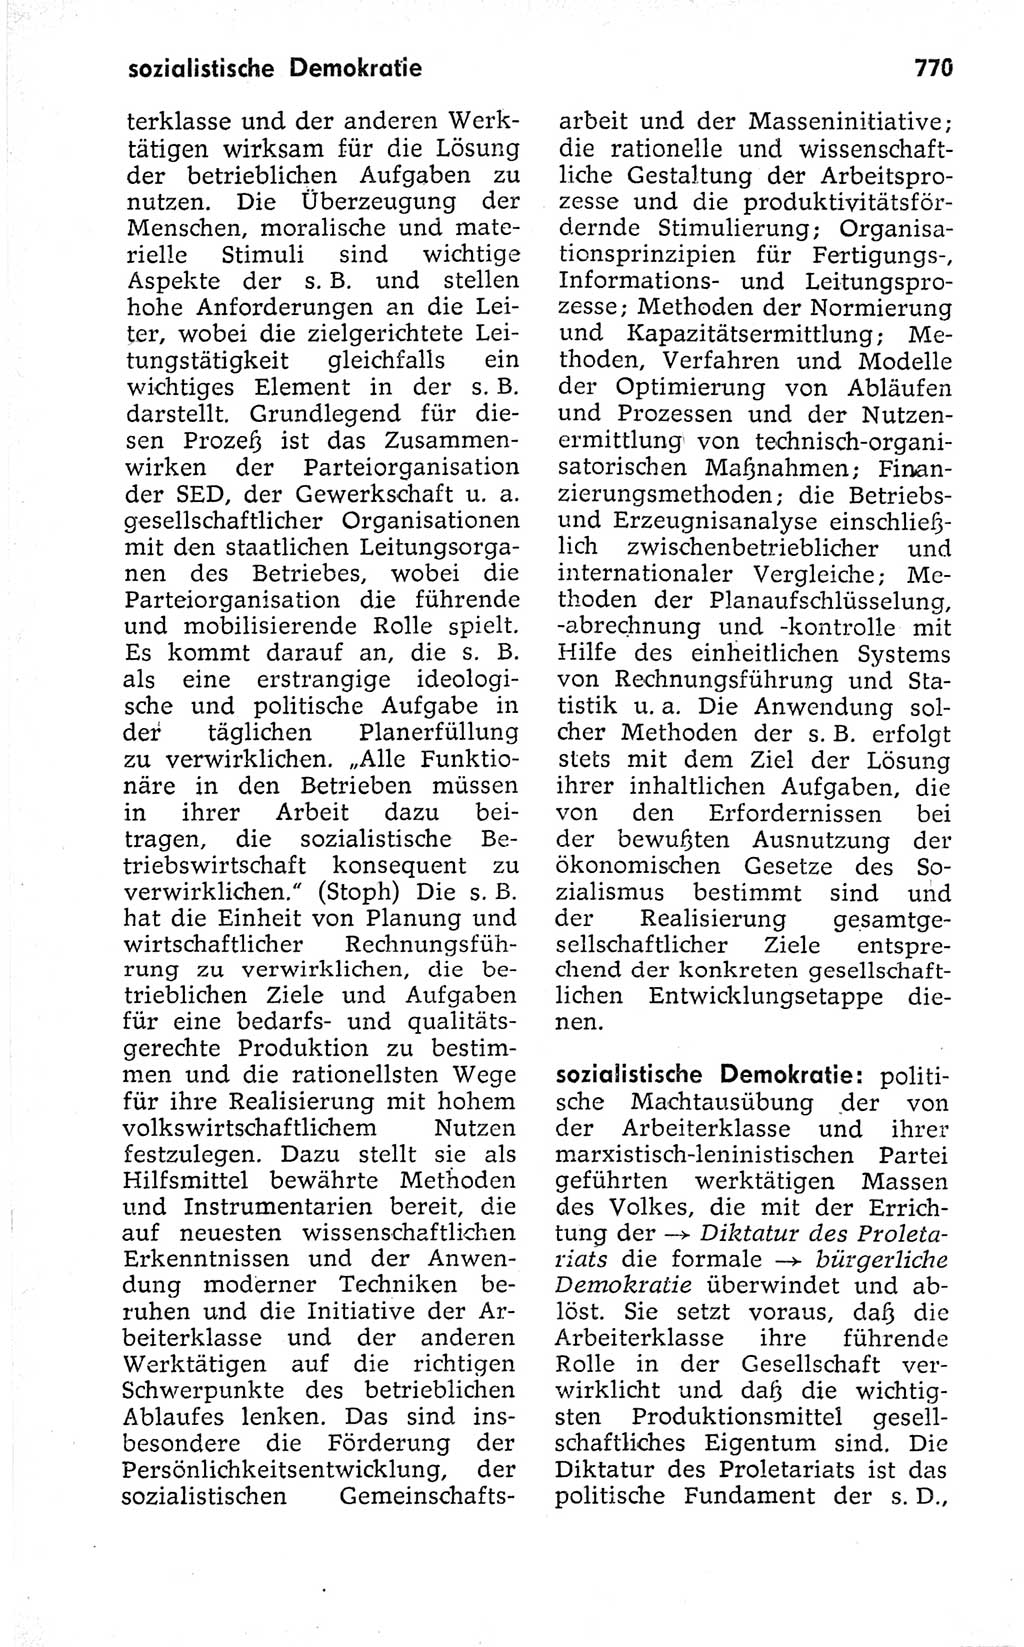 Kleines politisches Wörterbuch [Deutsche Demokratische Republik (DDR)] 1973, Seite 770 (Kl. pol. Wb. DDR 1973, S. 770)